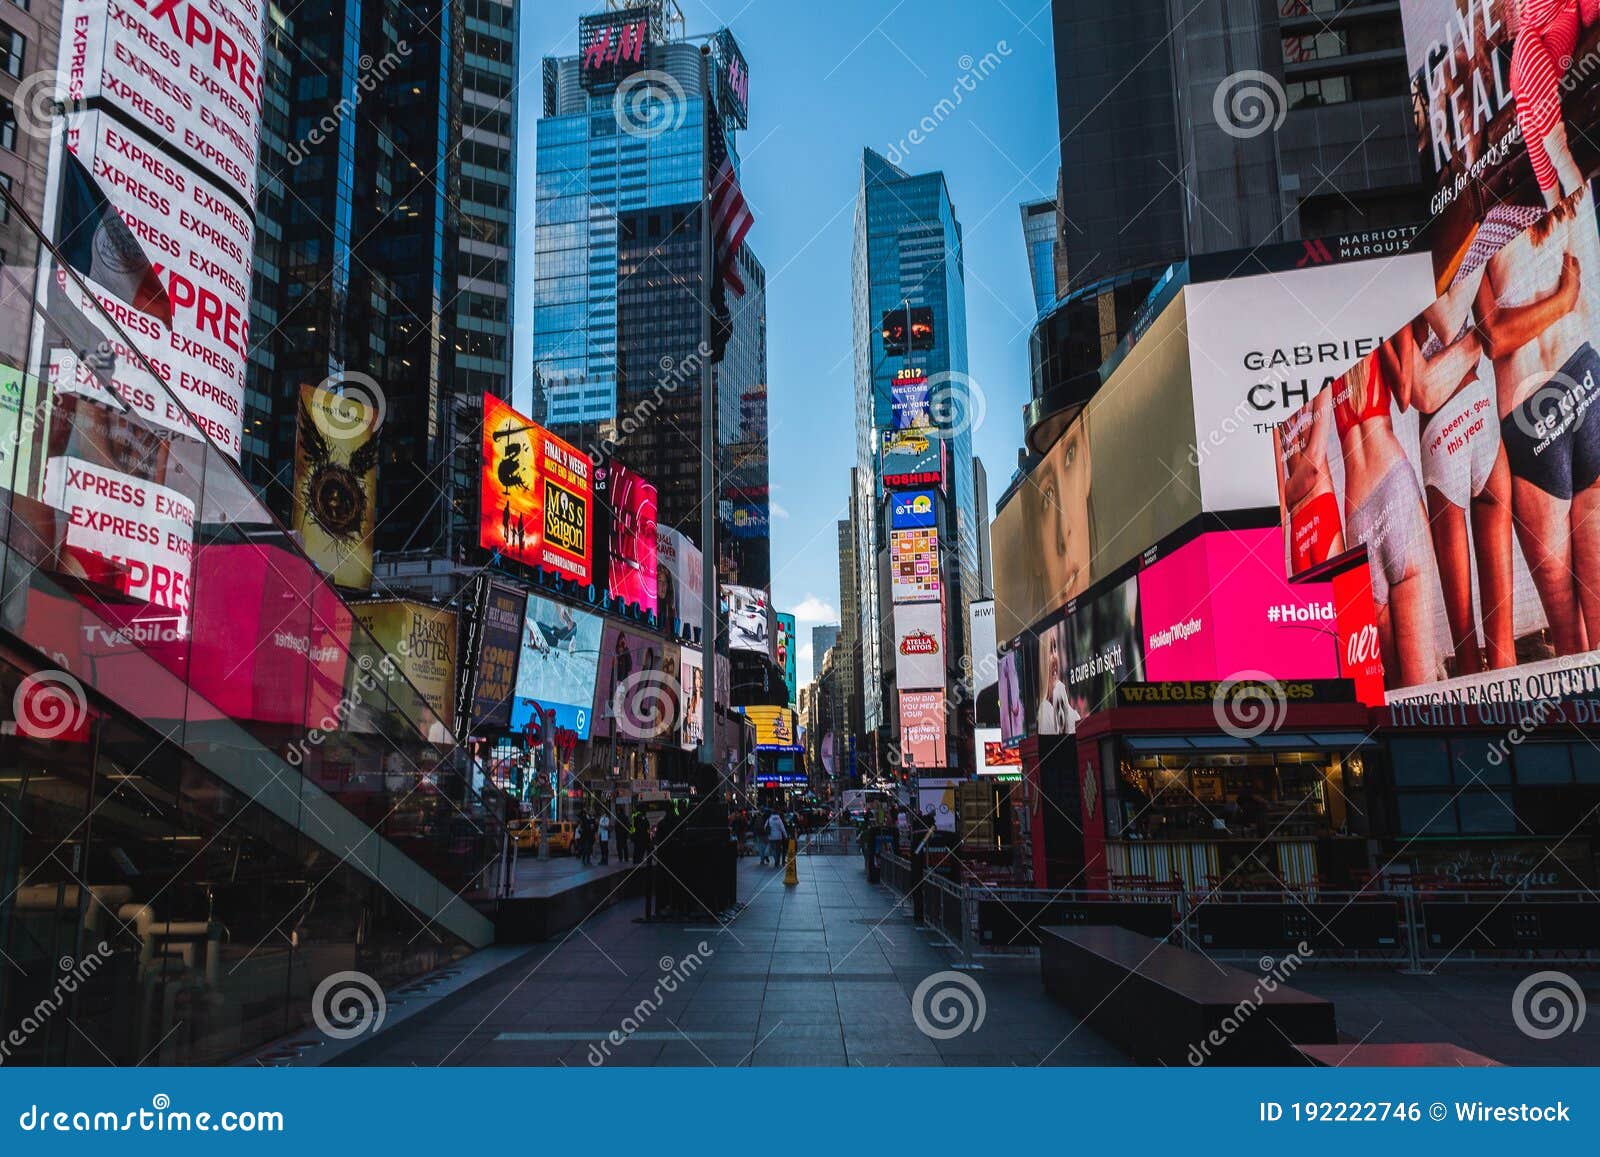 Desplazamiento Hacer la vida Ahora NEW YORK, UNITED STATES - Dec 11, 2017: Nueva York En Luces Editorial Photo  - Image of luces, people: 192222746